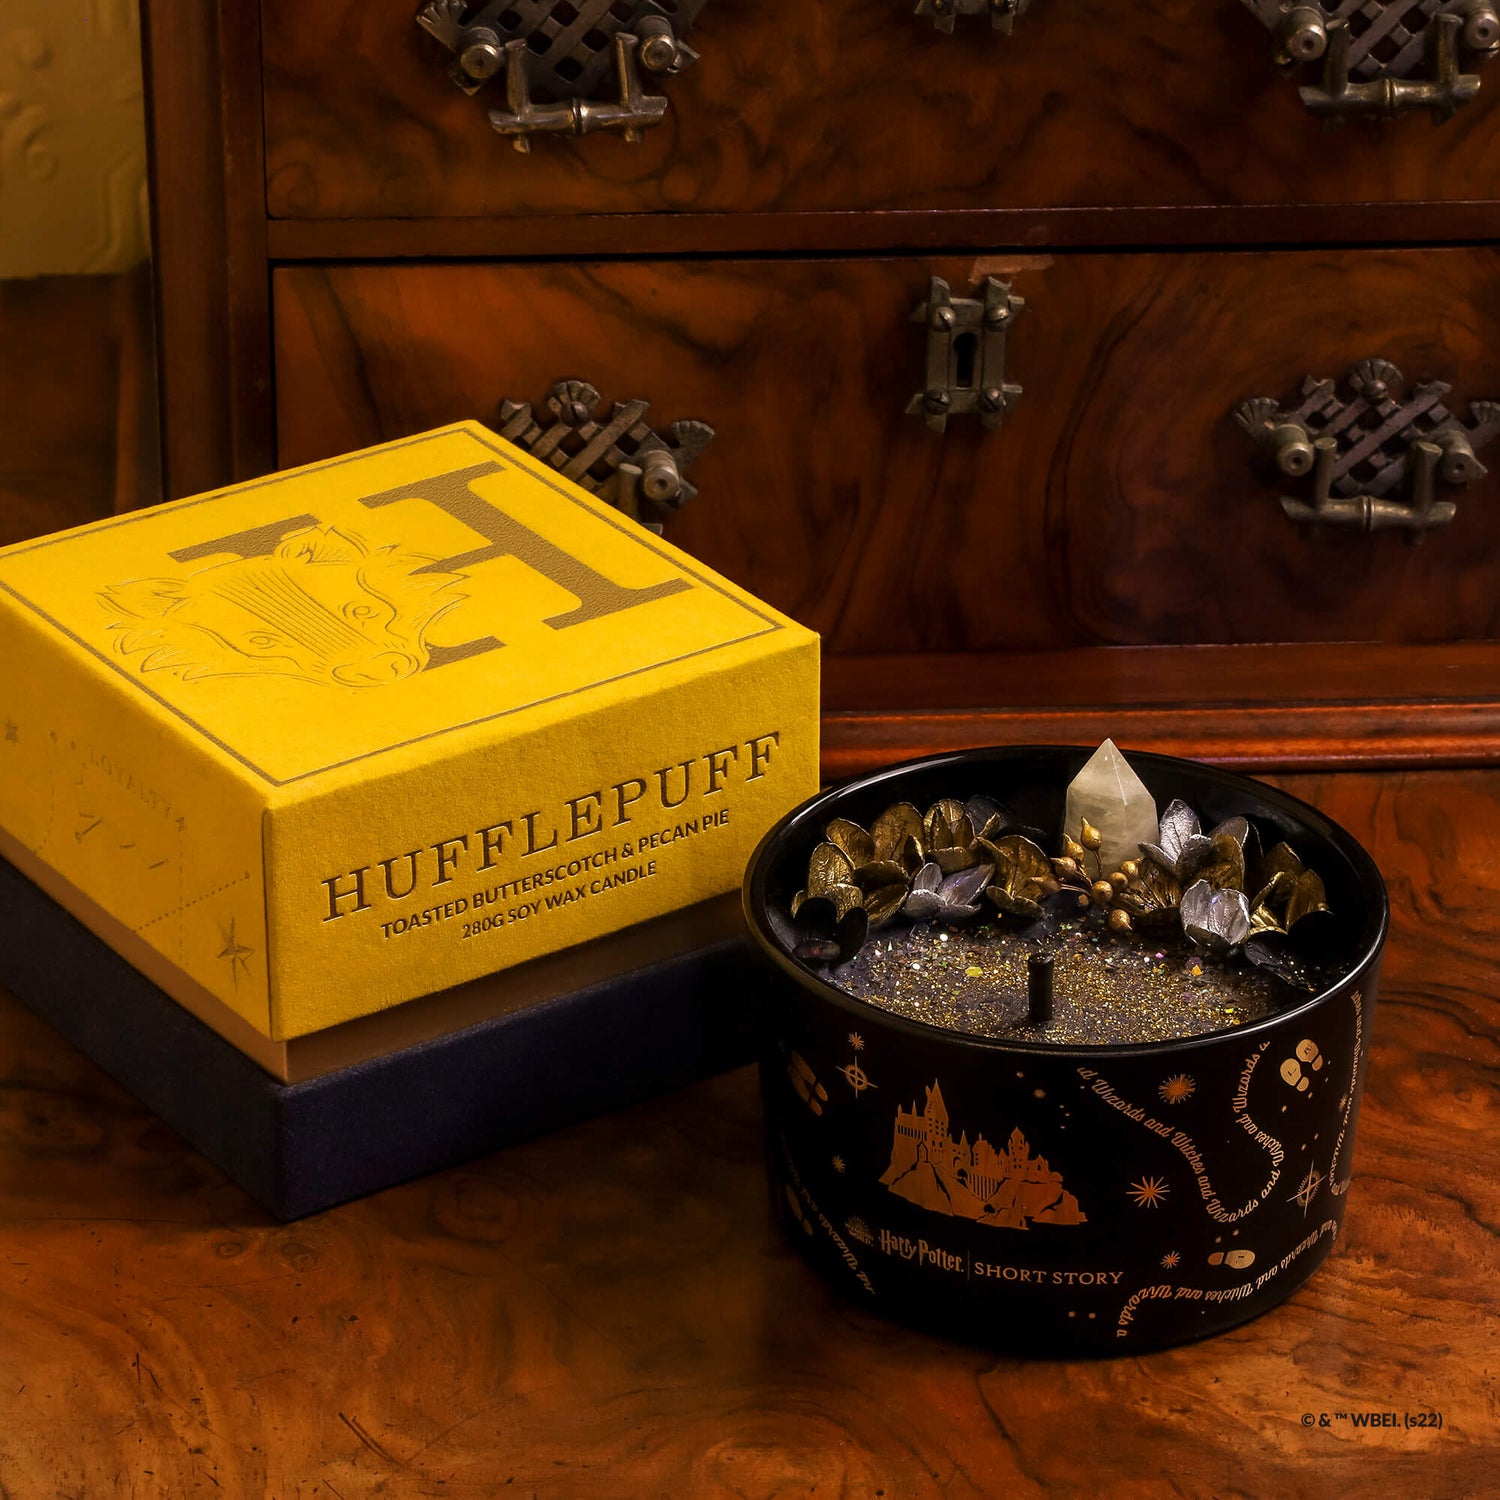 Harry Potter Candle Slytherin – Short Story